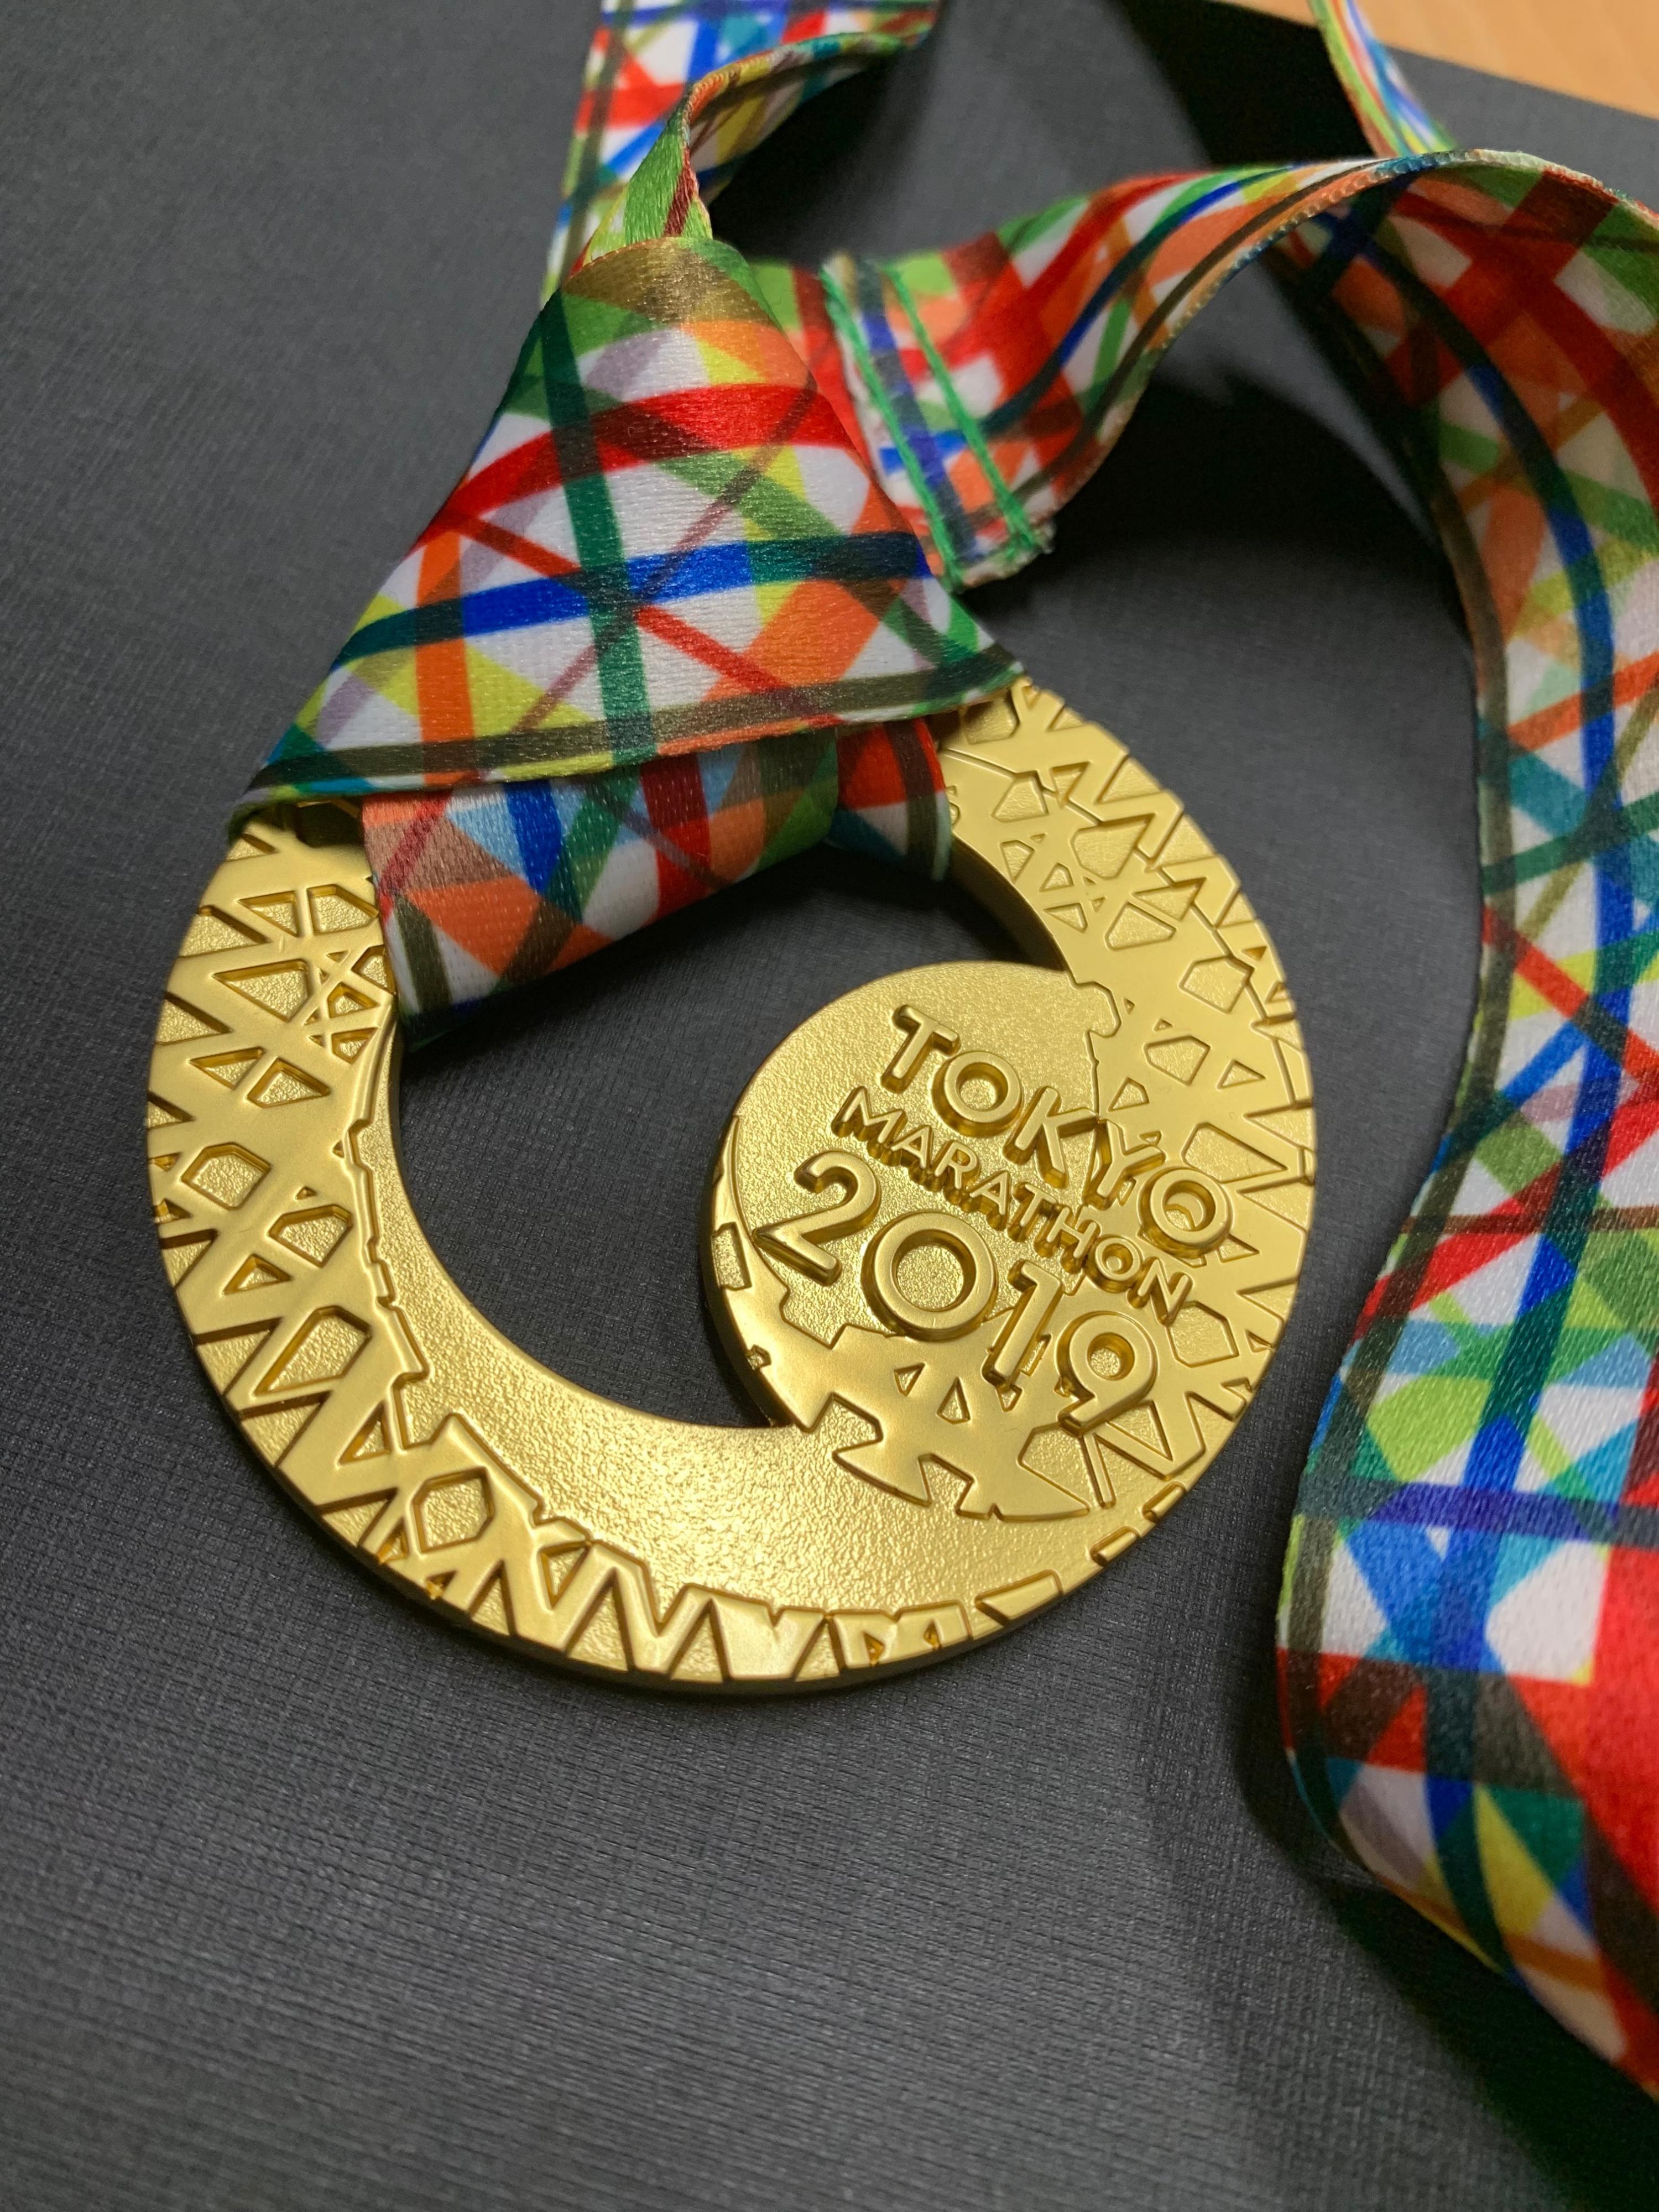 東京マラソンの記念メダル | 【公式】有限会社 栄進